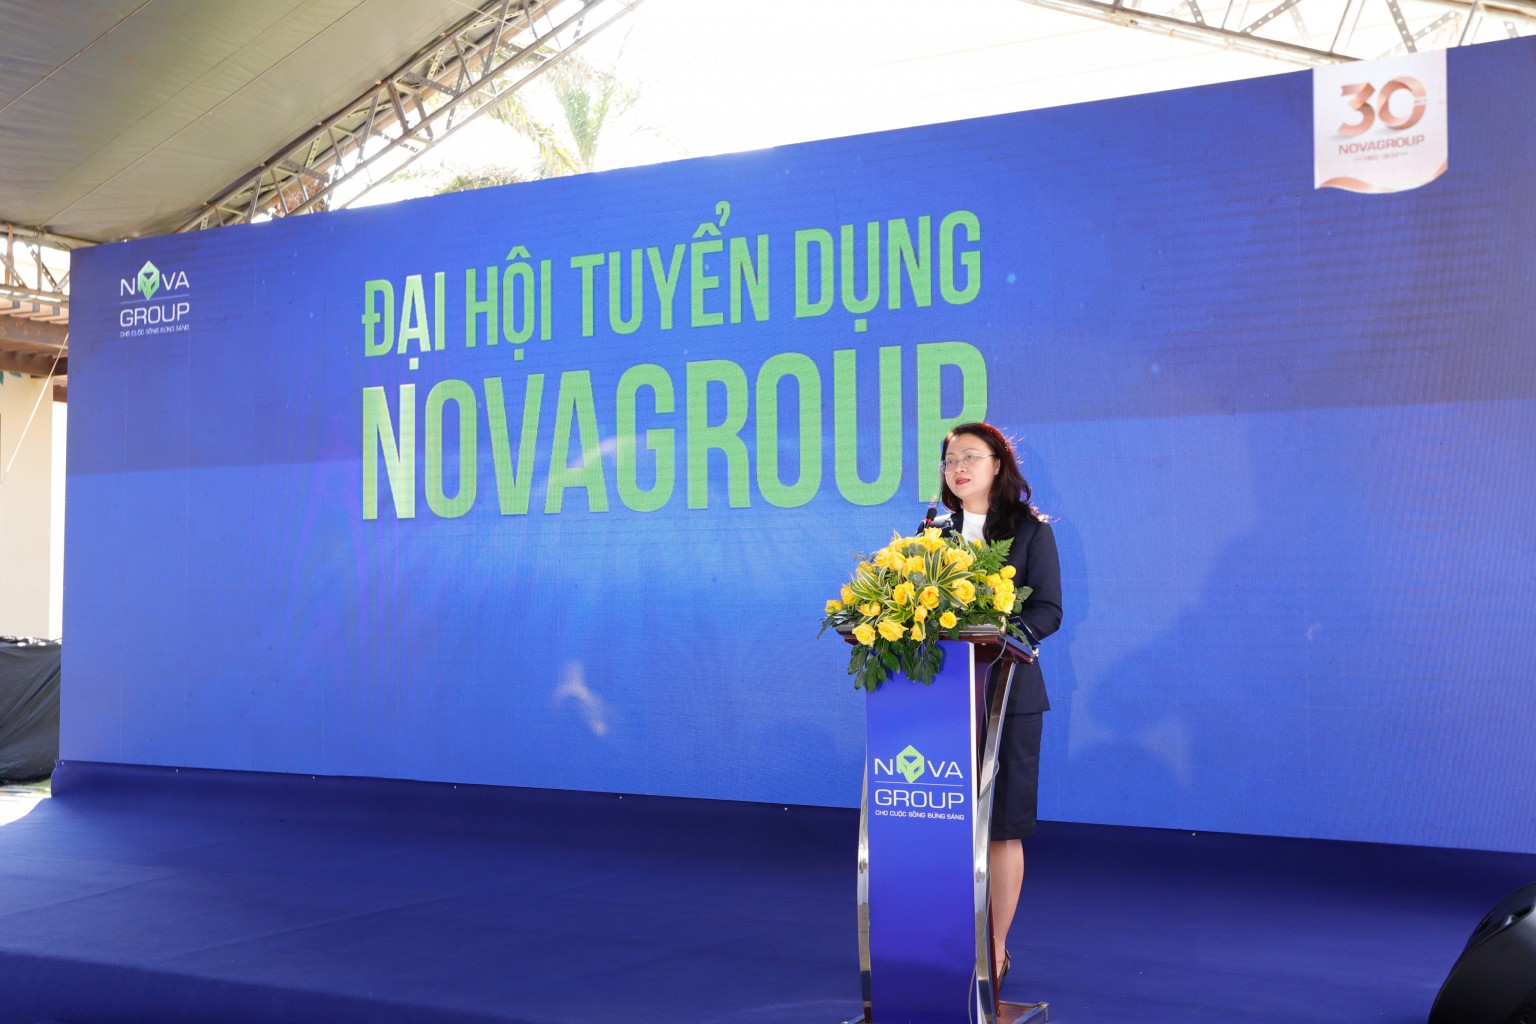 NovaGroup bổ sung đội ngũ Novator tại Phan Thiết